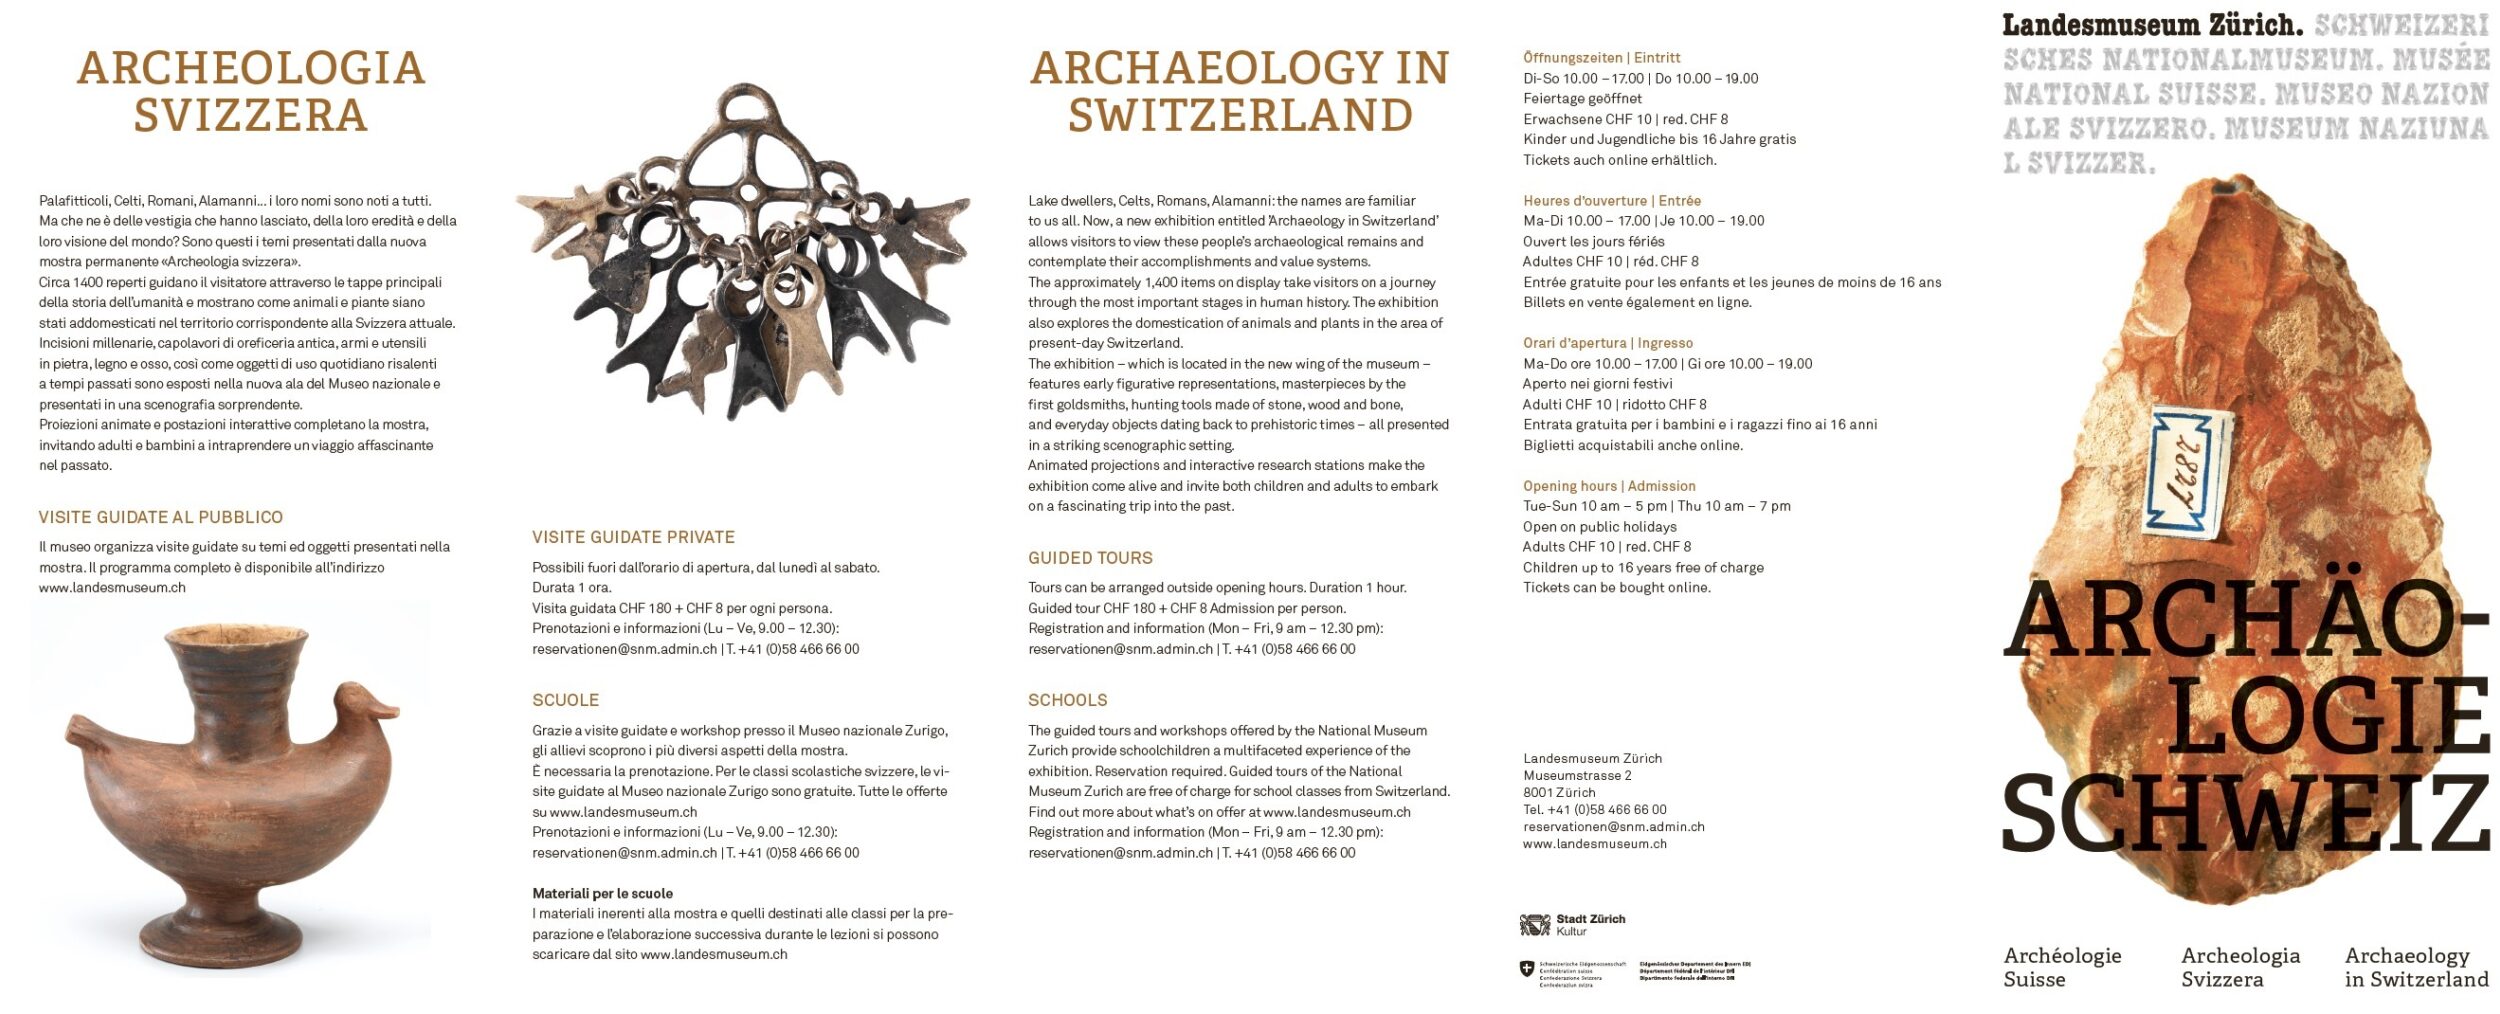 Landesmuseum Dauerausstellung Archäologie